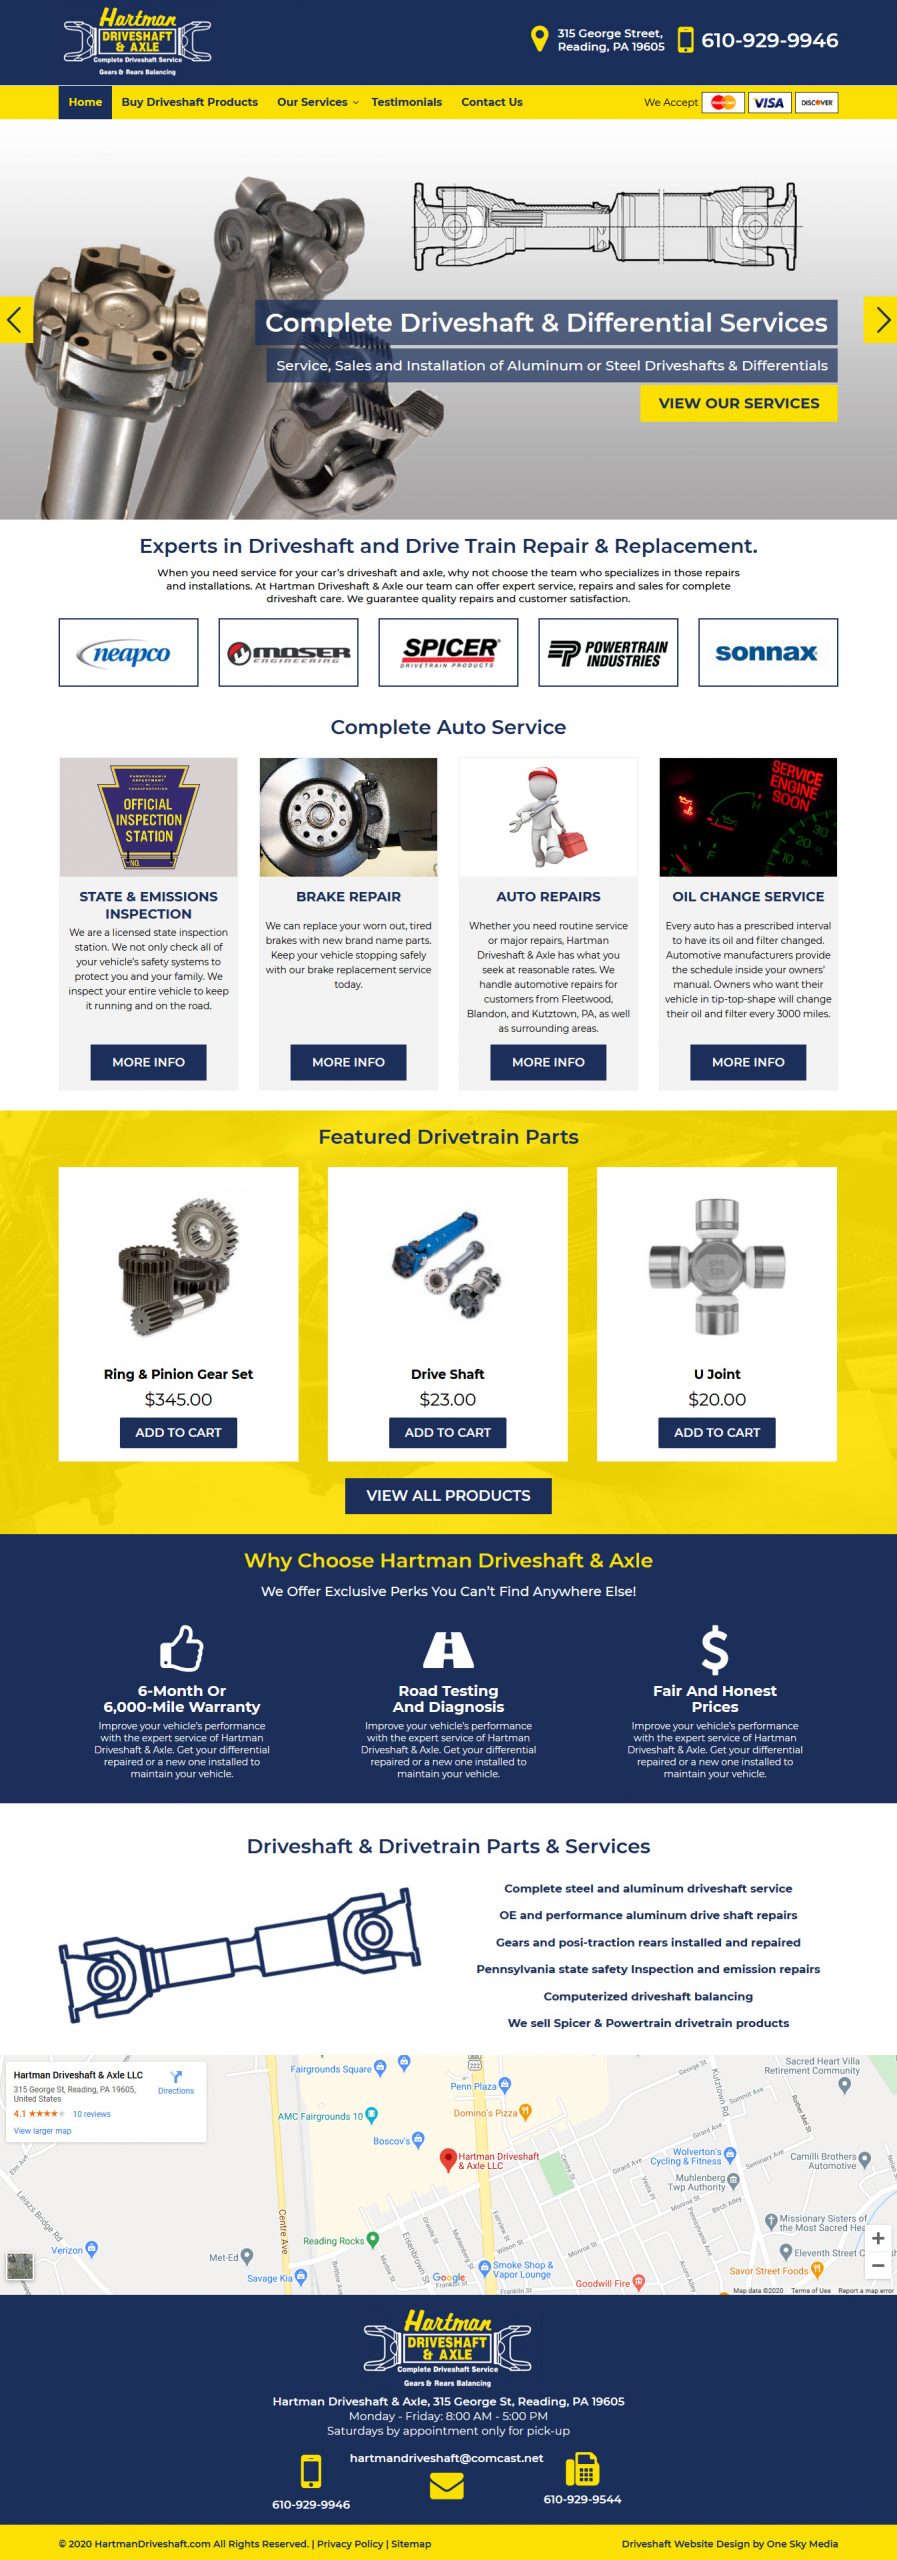 Hartman Driveshaft & Axle Website Design